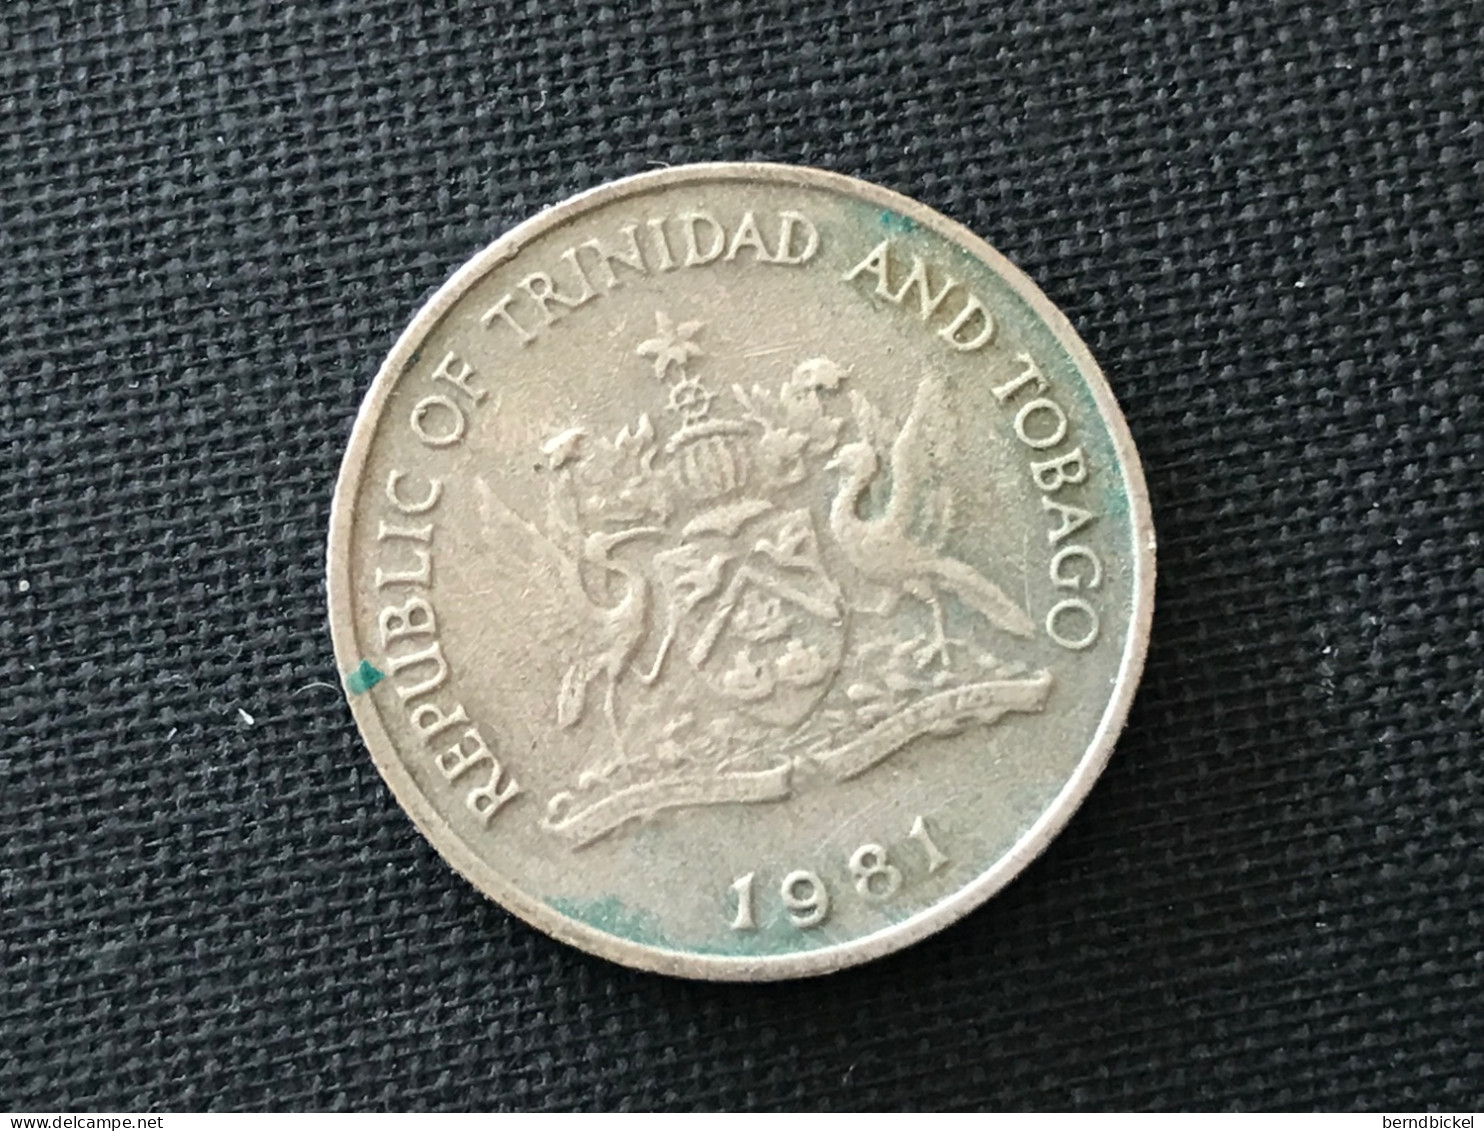 Münze Münzen Umlaufmünze Trinidad & Tobago 25 Cents 1981 - Trinidad Y Tobago